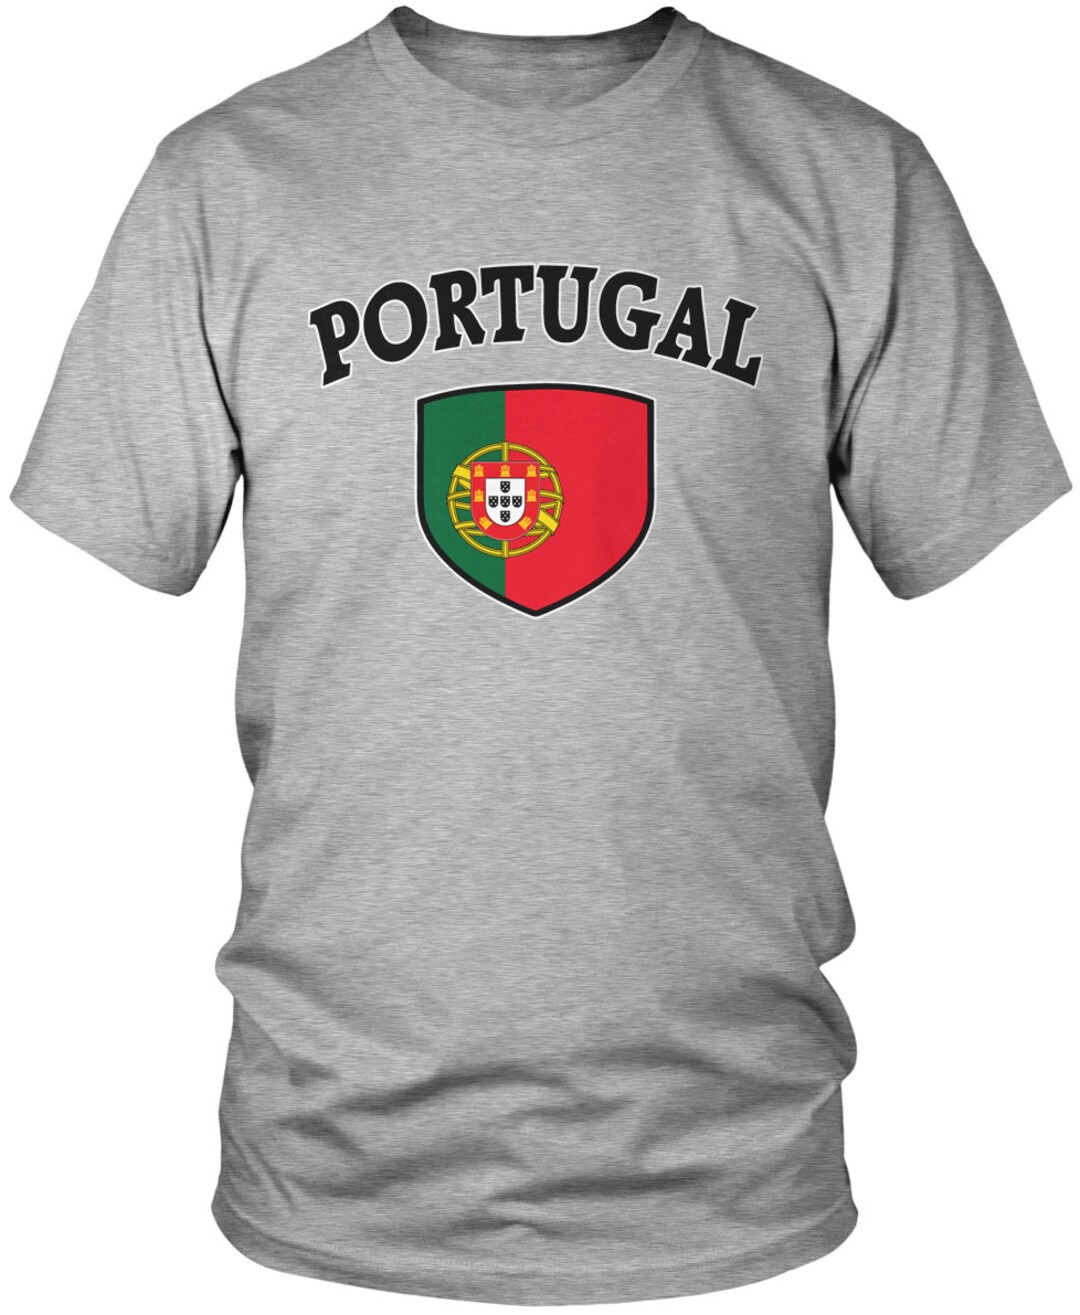 Krage Tåget violin Portugal Country Flag Crest Men's T-shirt Portuguese - Etsy